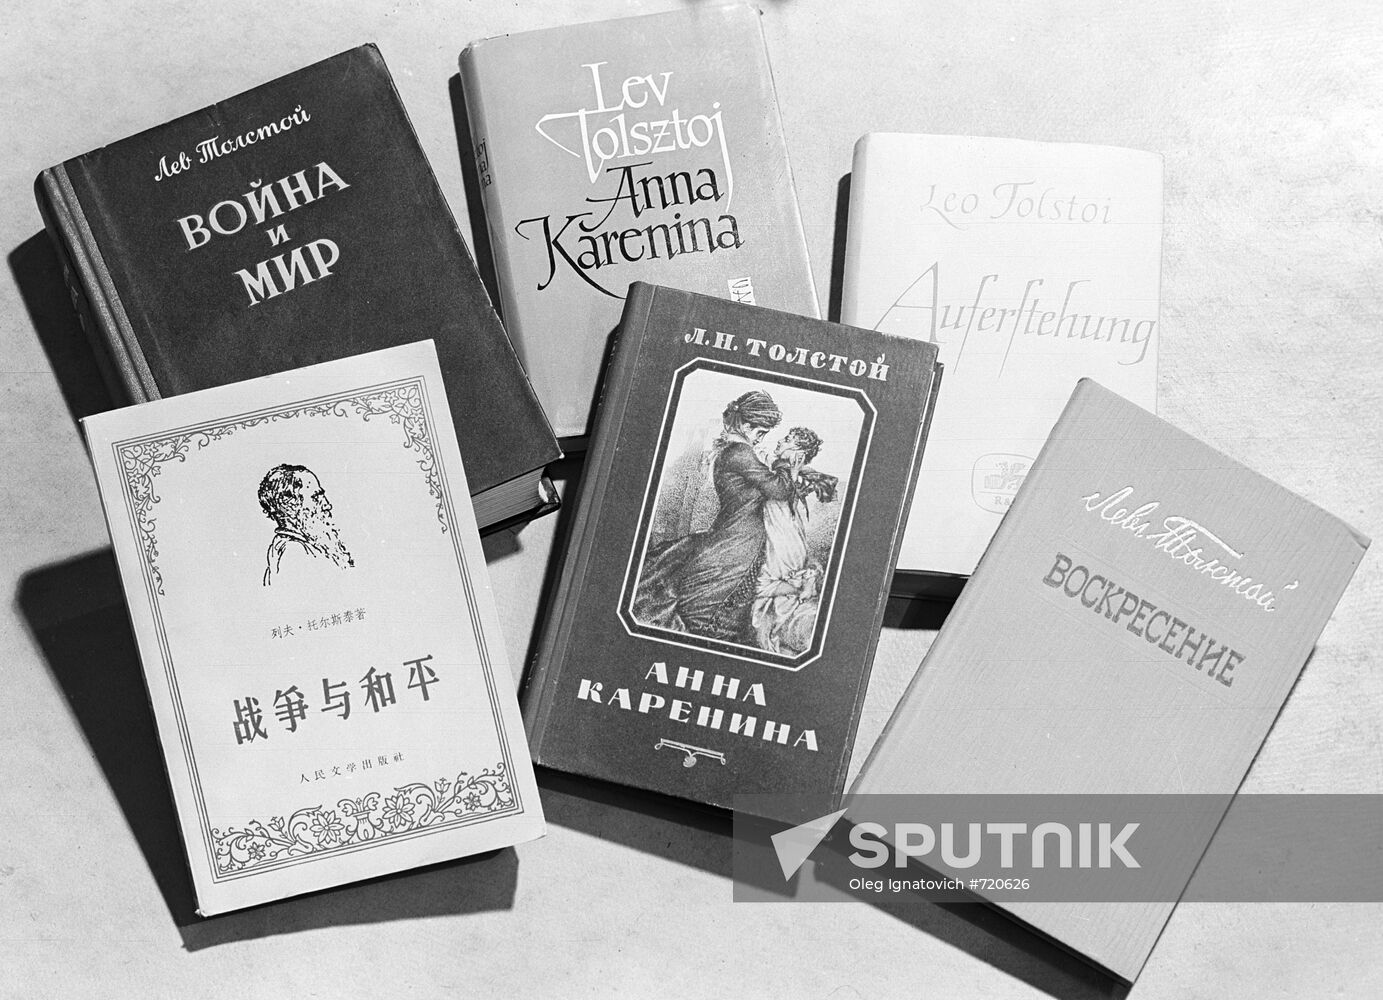 Leo Tolstoy's books